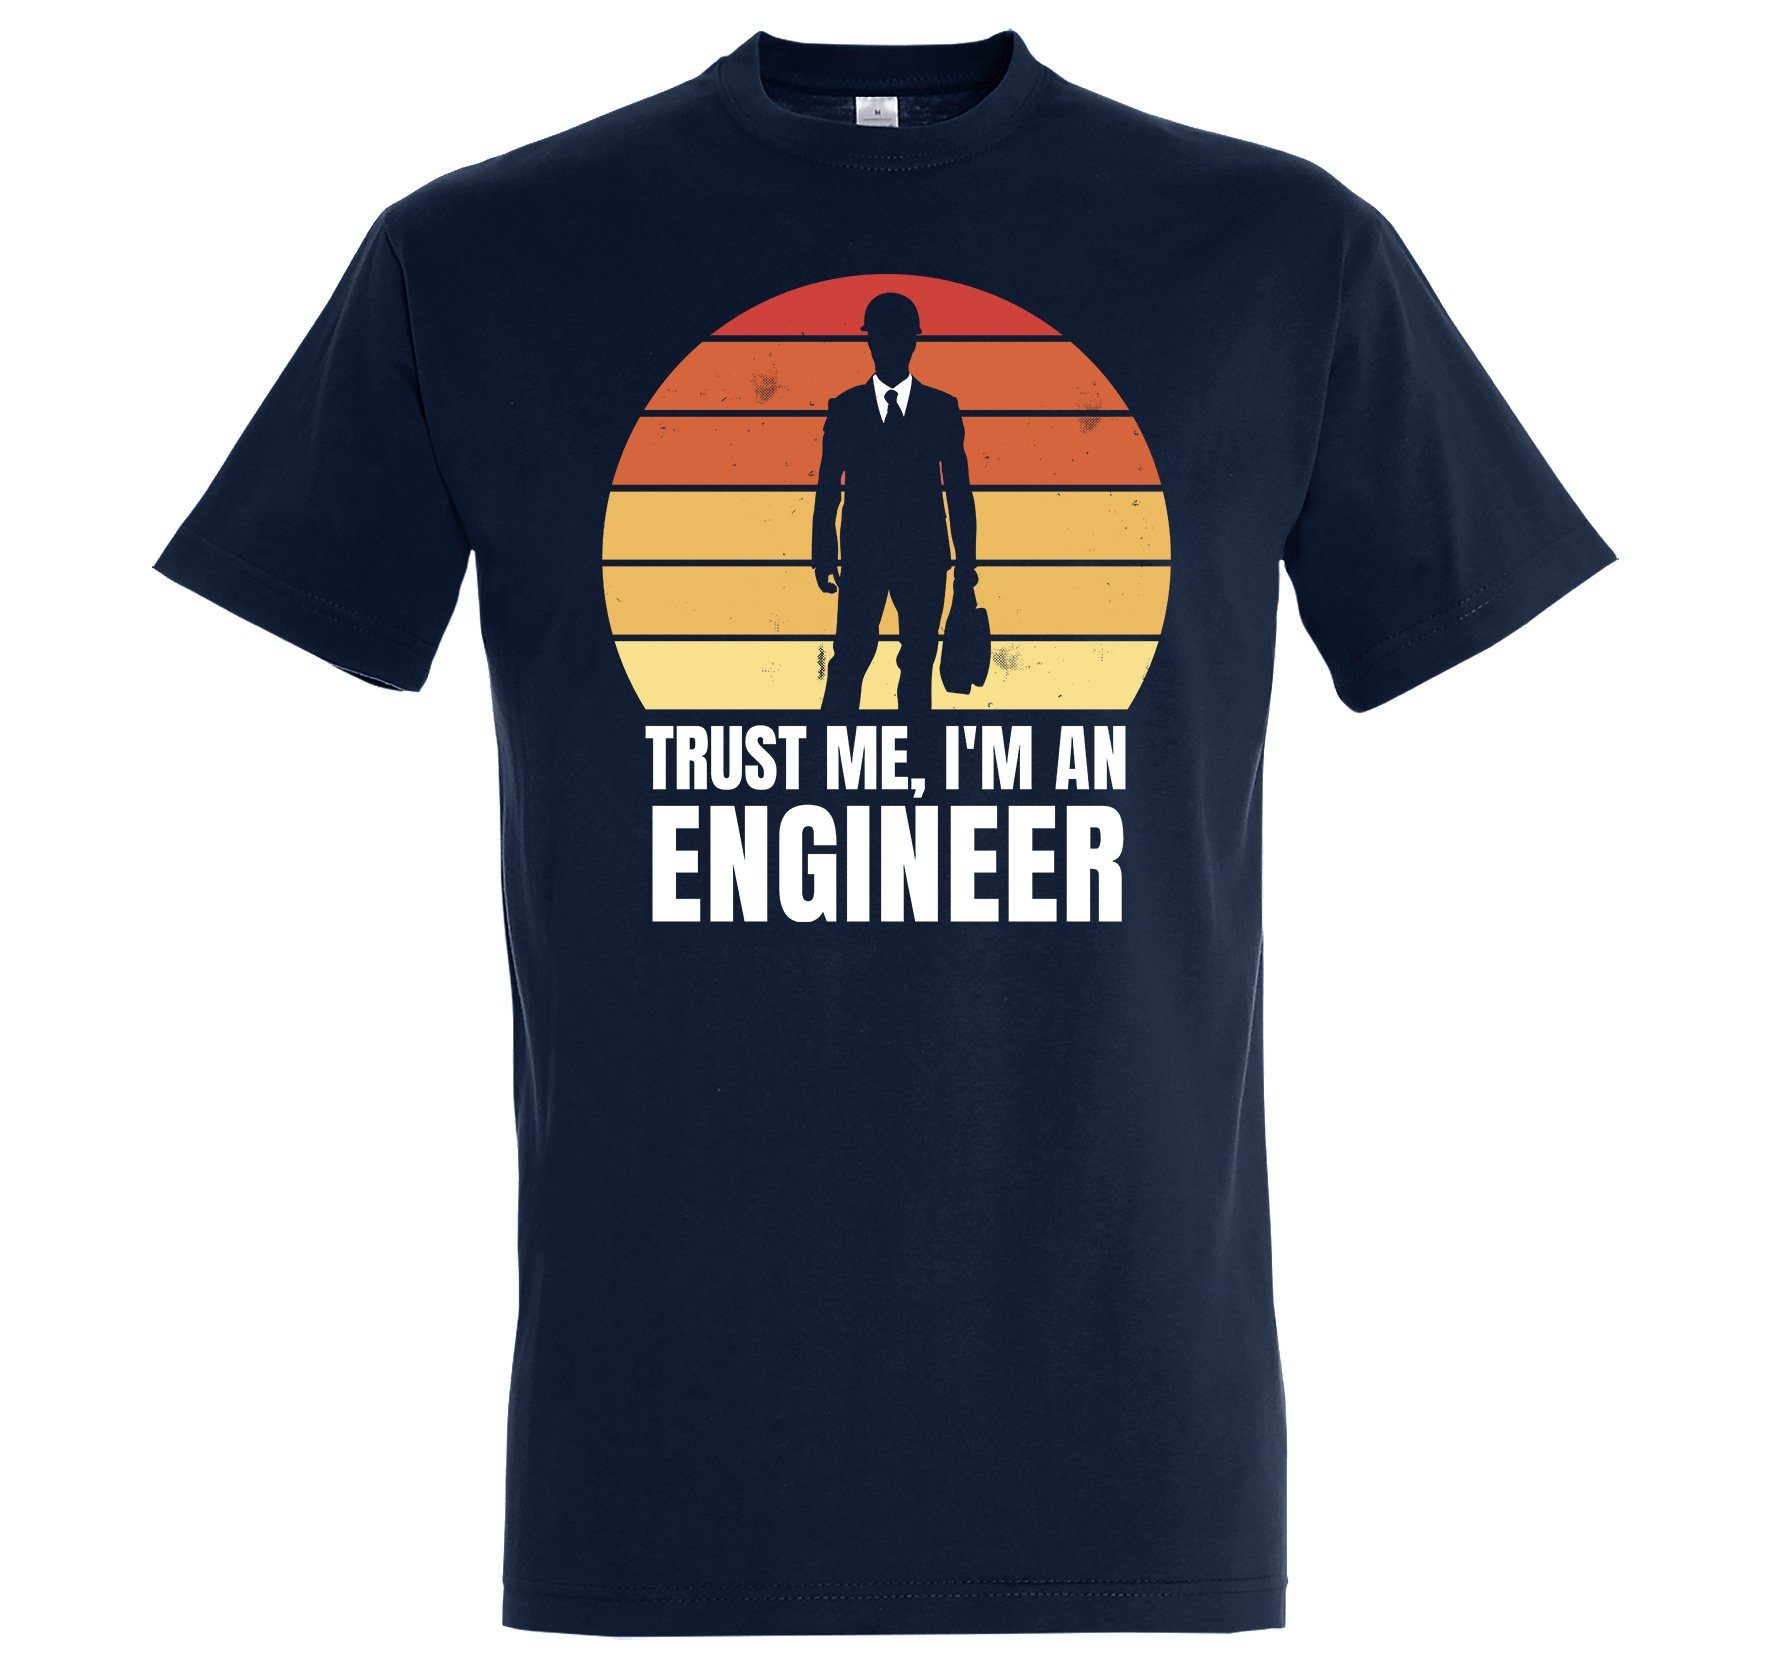 Youth Navyblau Frontdruck mit Engineer Shirt Herren trendigem Ingenieur T-Shirt Designz